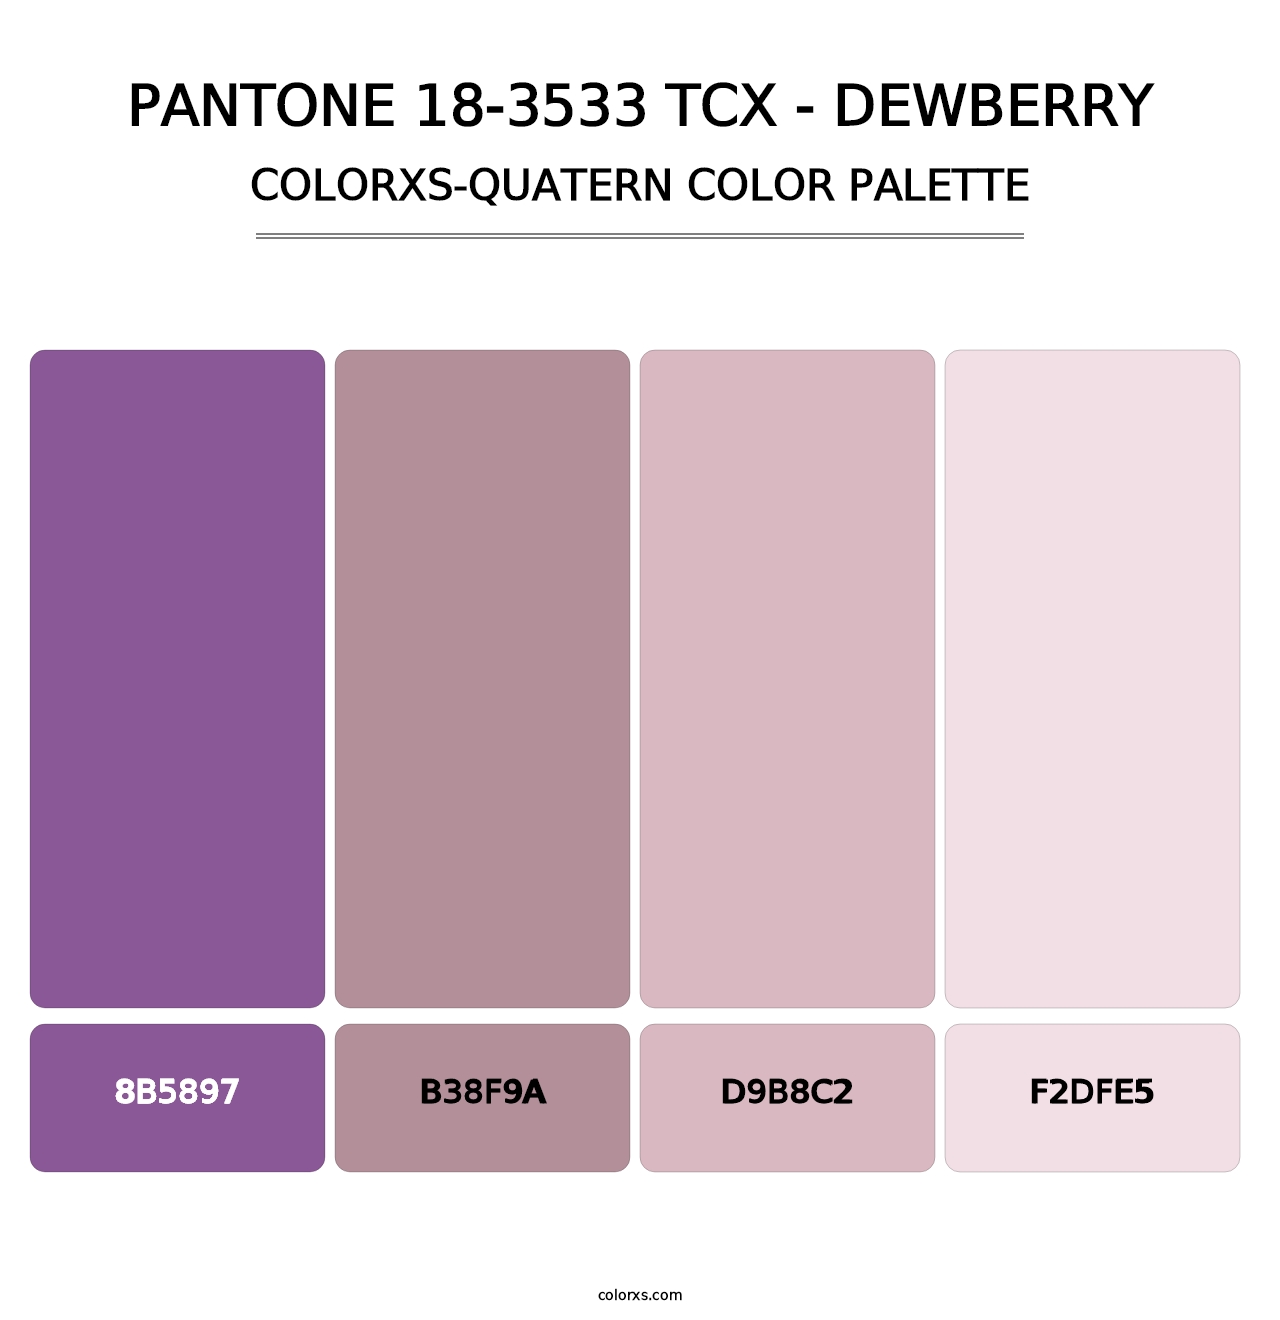 PANTONE 18-3533 TCX - Dewberry - Colorxs Quatern Palette